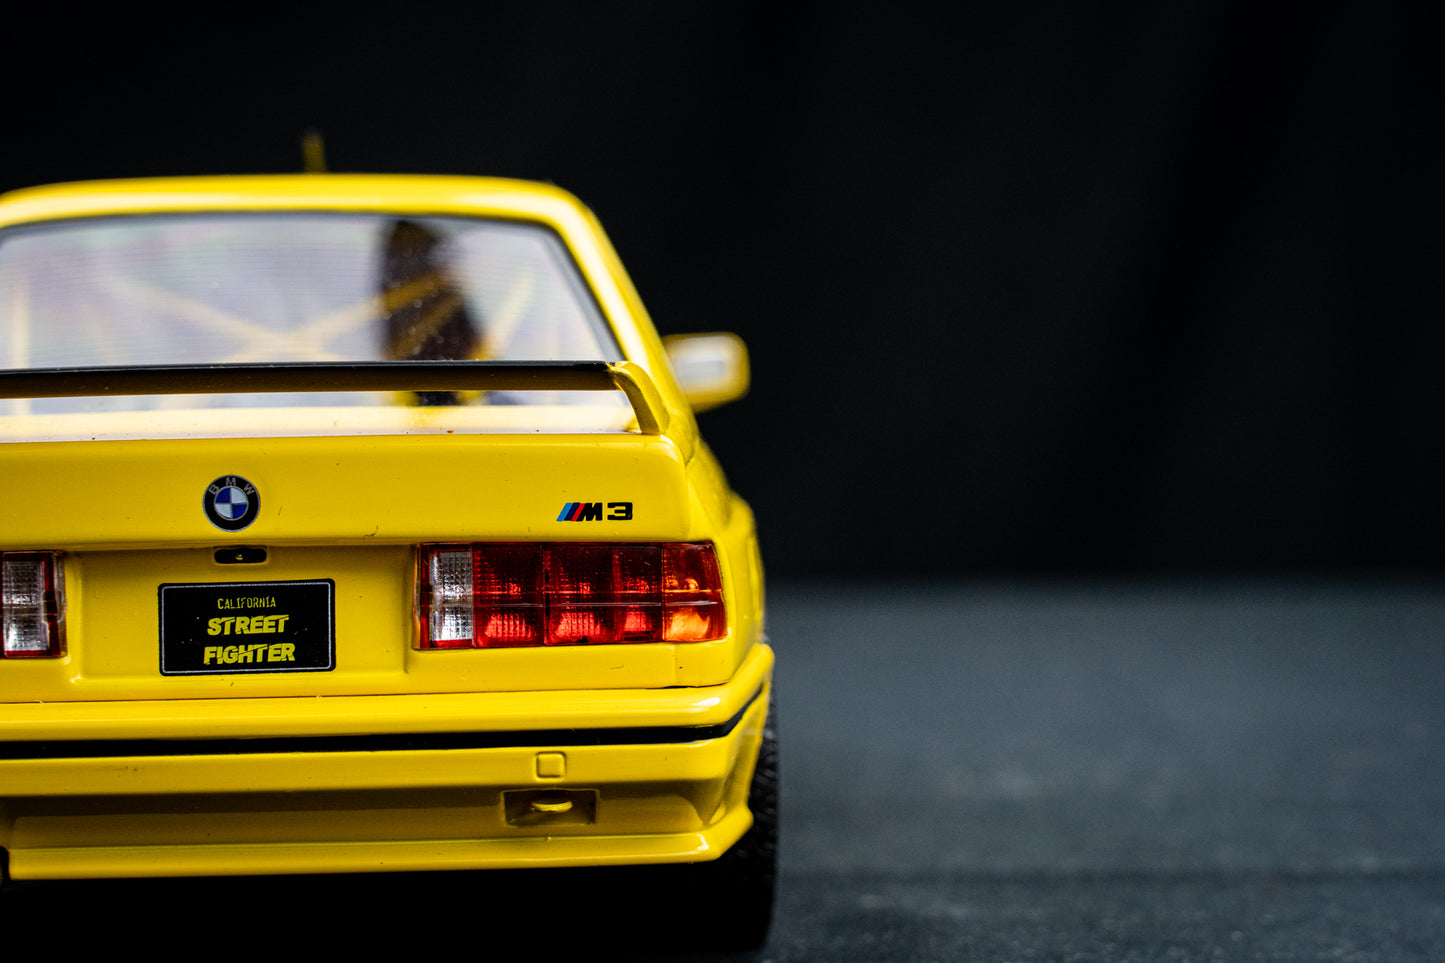 BMW M3 E30 "Streetfighter" gelb Baujahr 1990 - 1:18 Solido